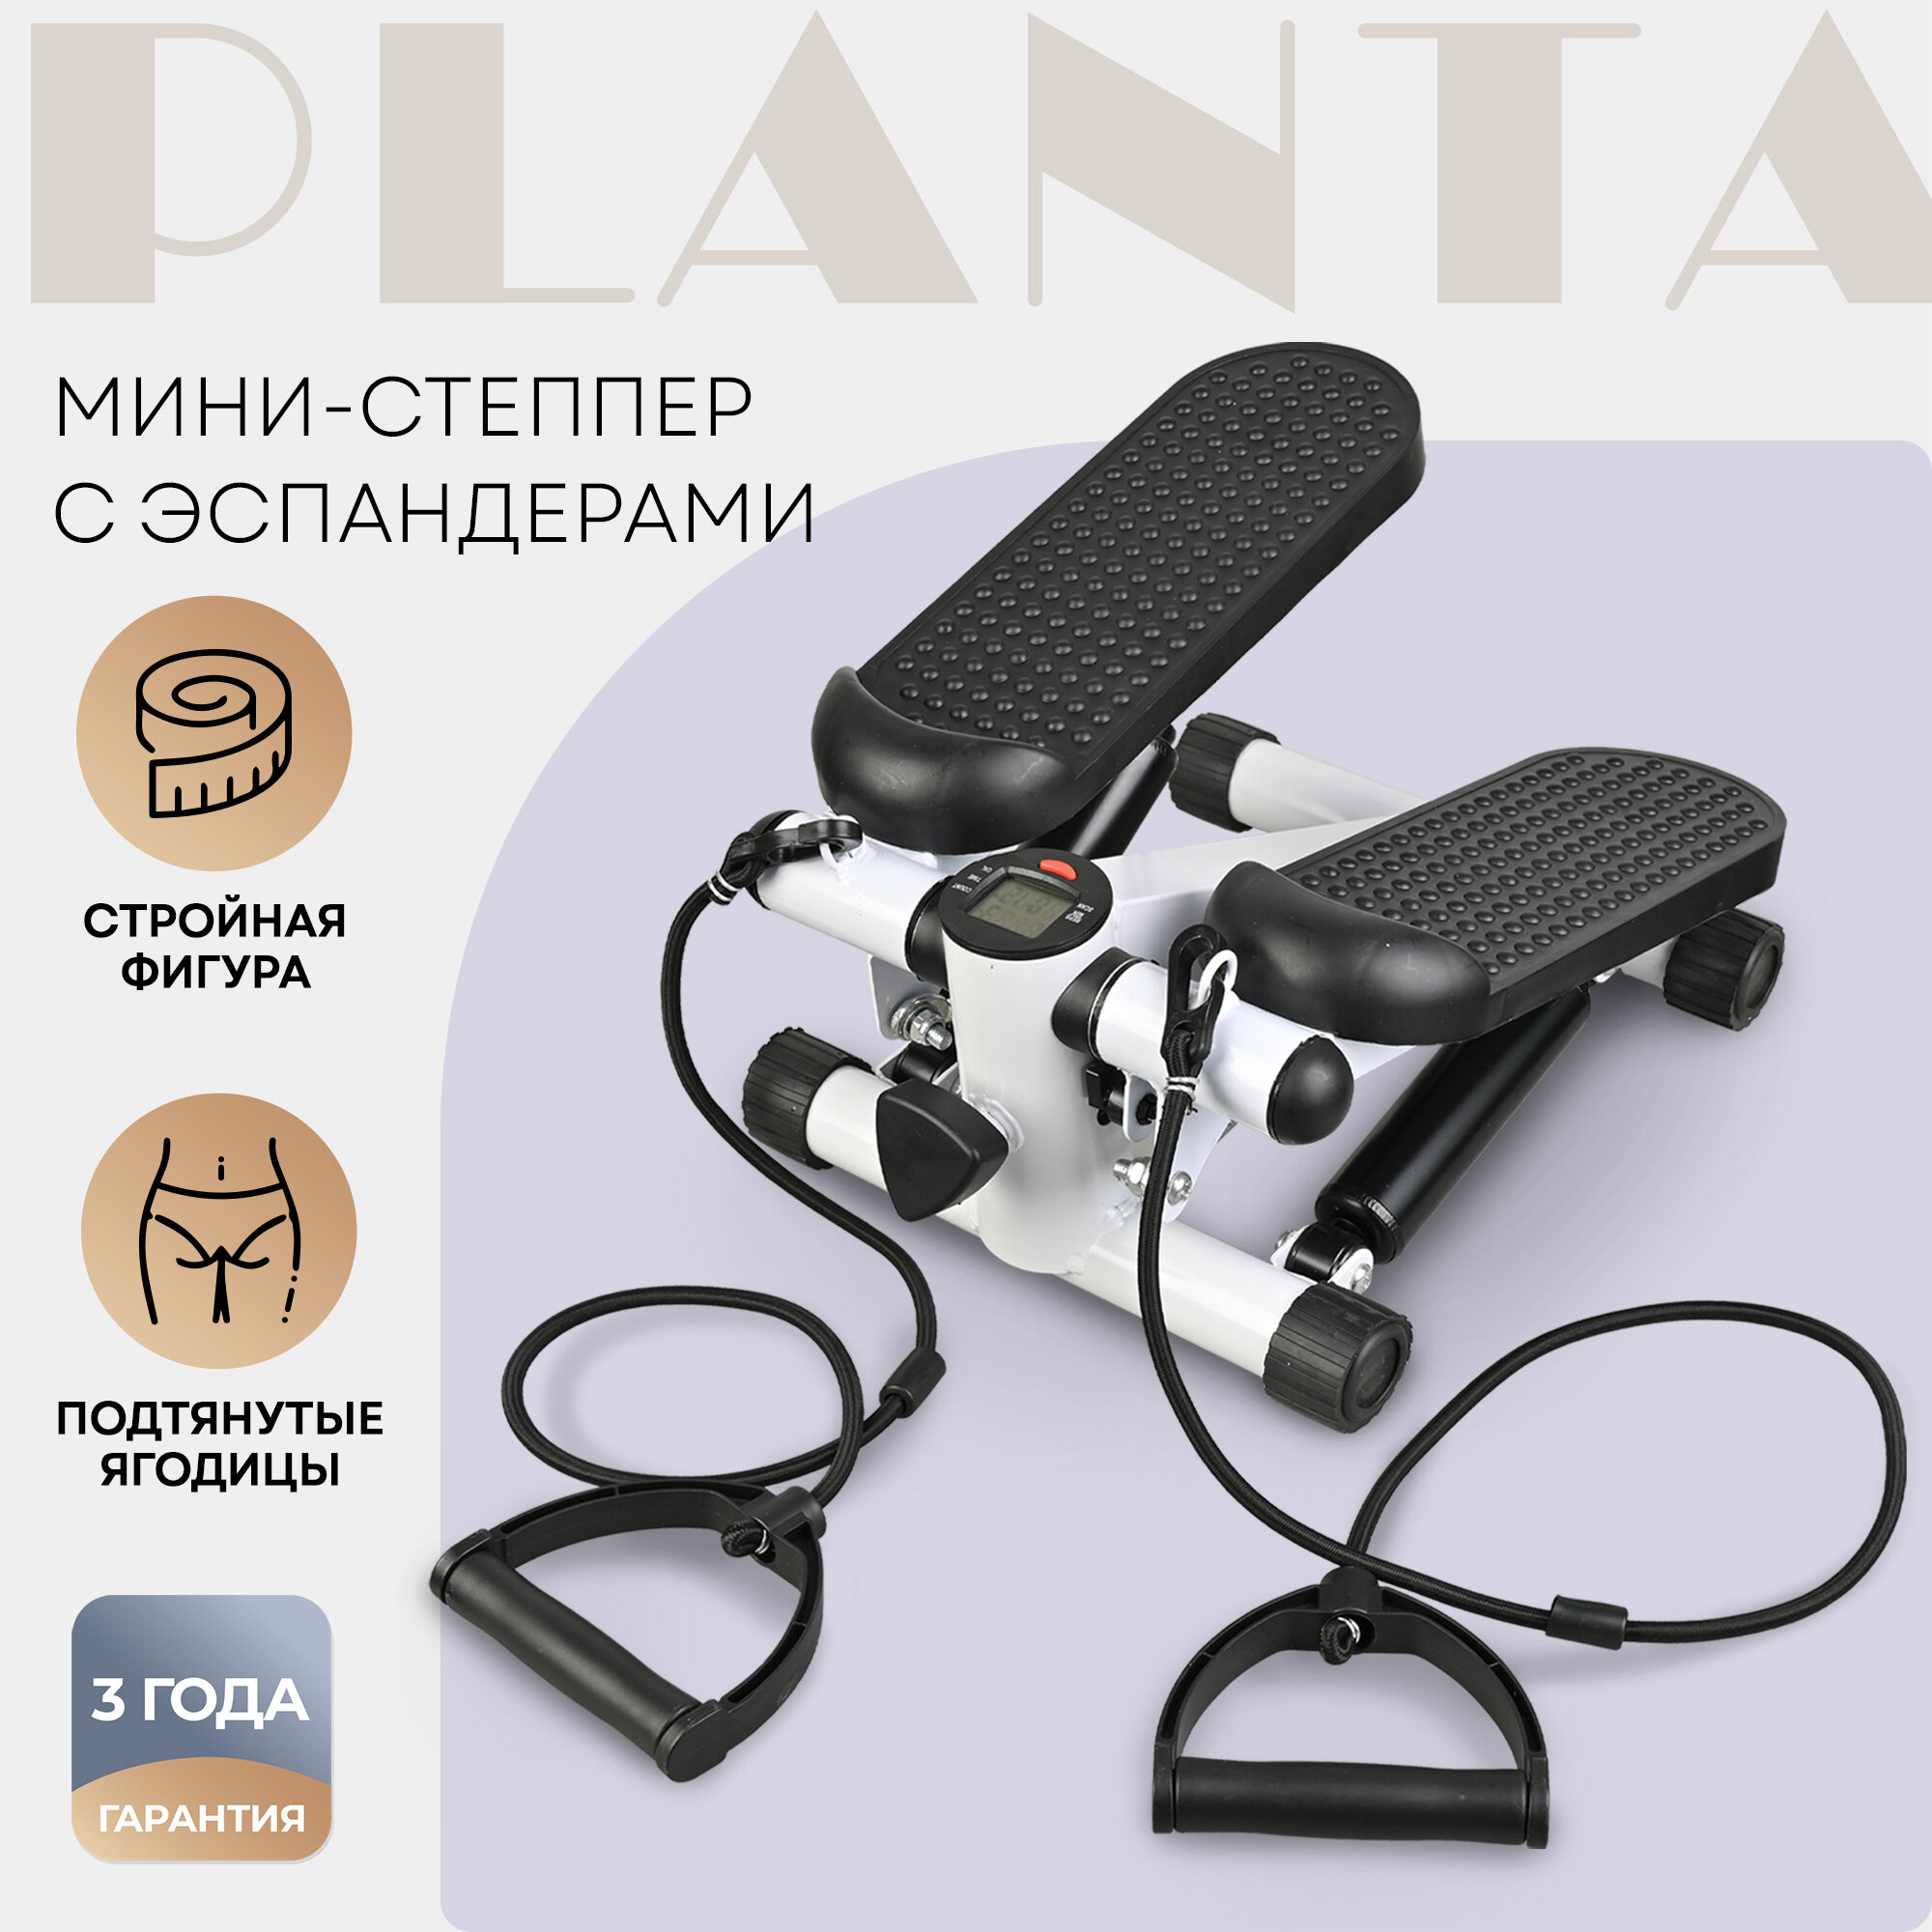 PLANTA Мини-степпер с эспандерами FD-STEP-001, ножной домашний кардиотренажёр для похудения, для ног, бедер, ягодиц